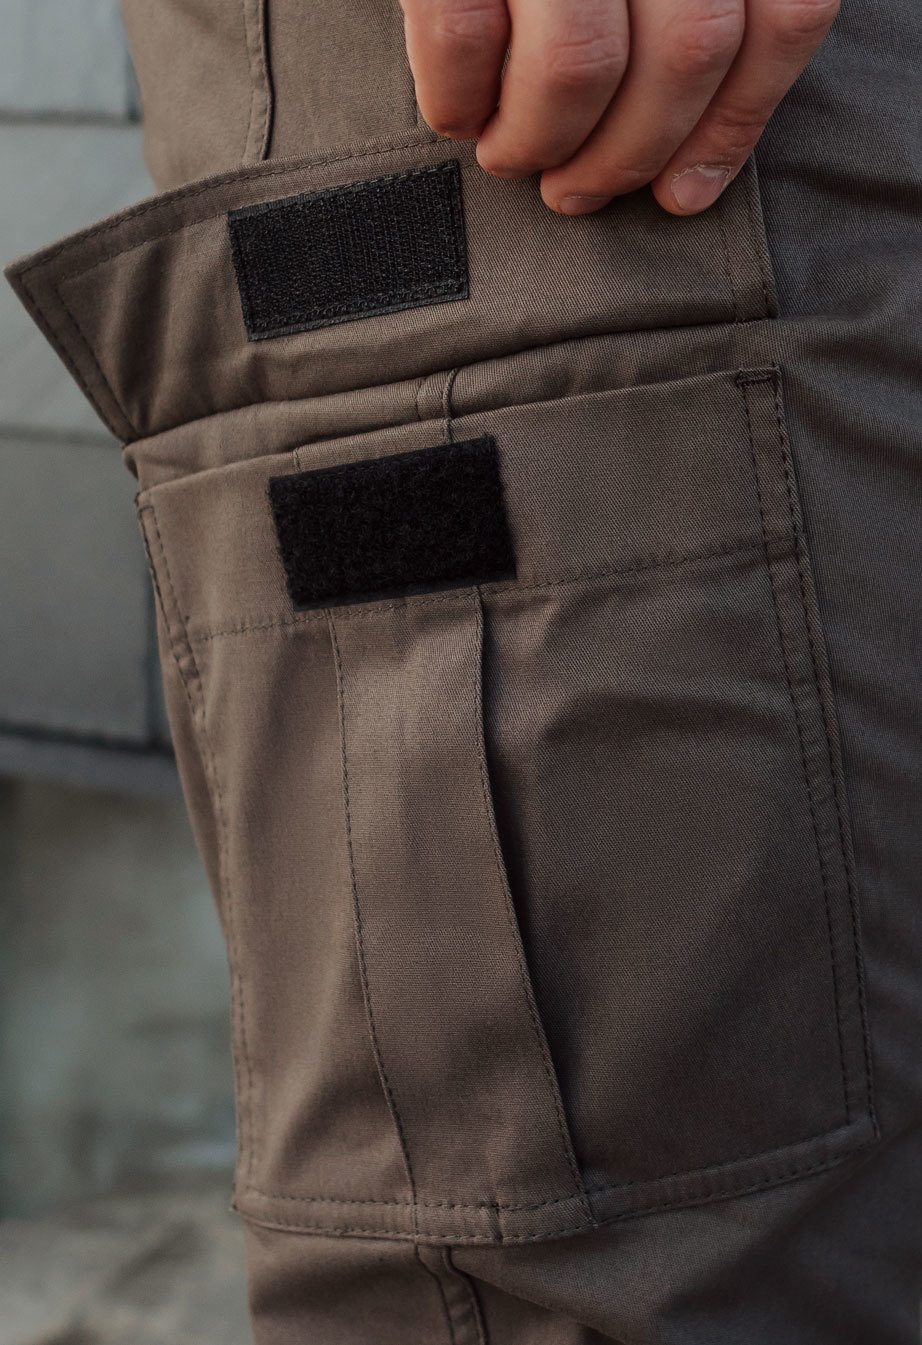 Spodnie Staff cargo brown